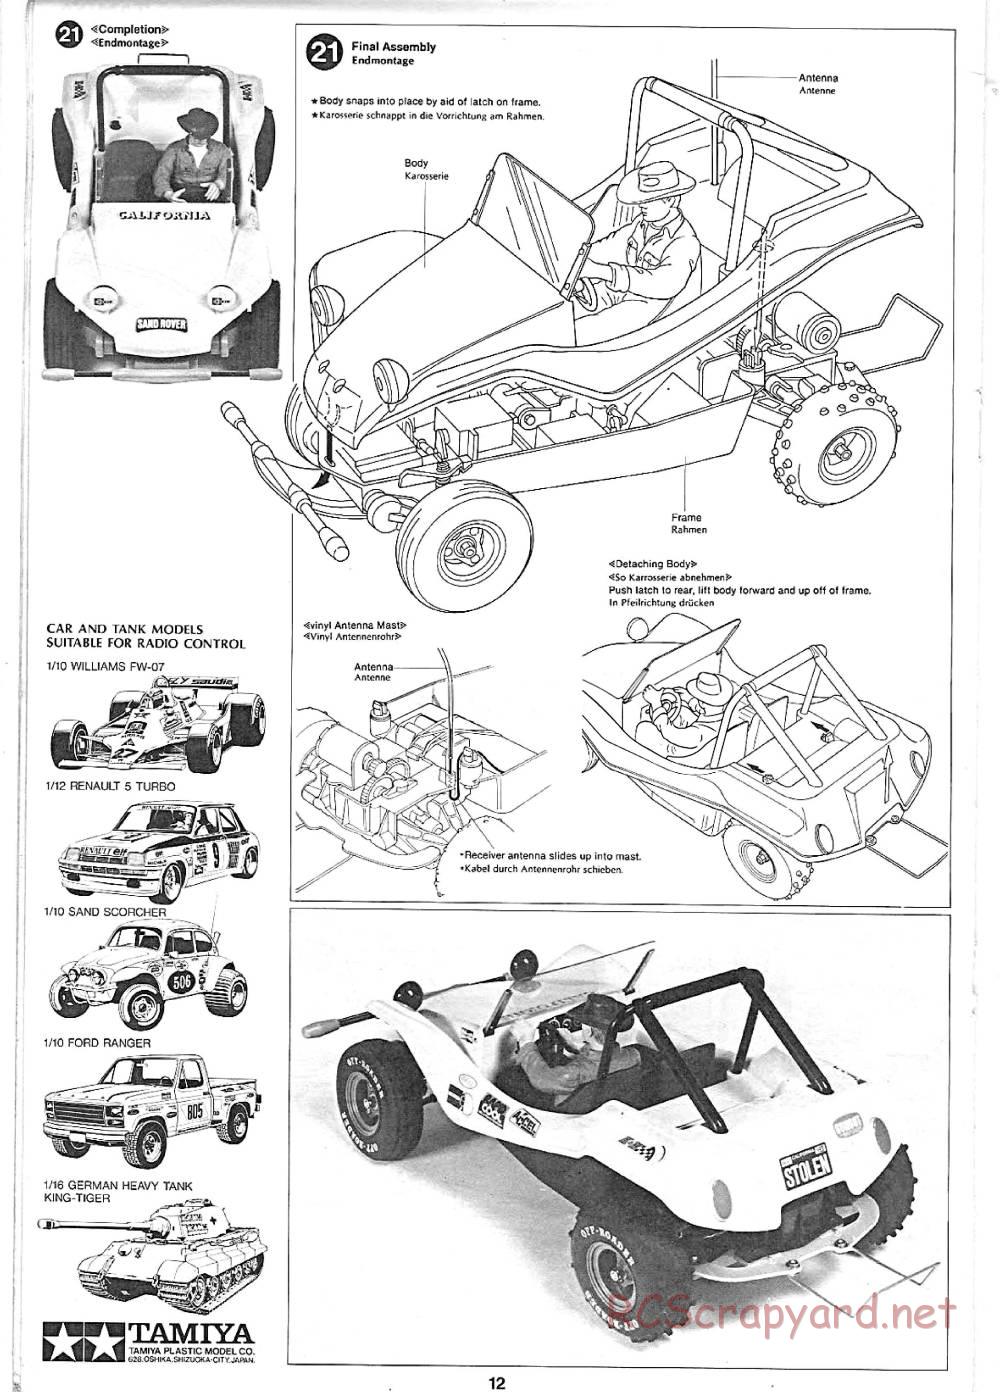 Tamiya - Sand Rover - 58024 - Manual - Page 12